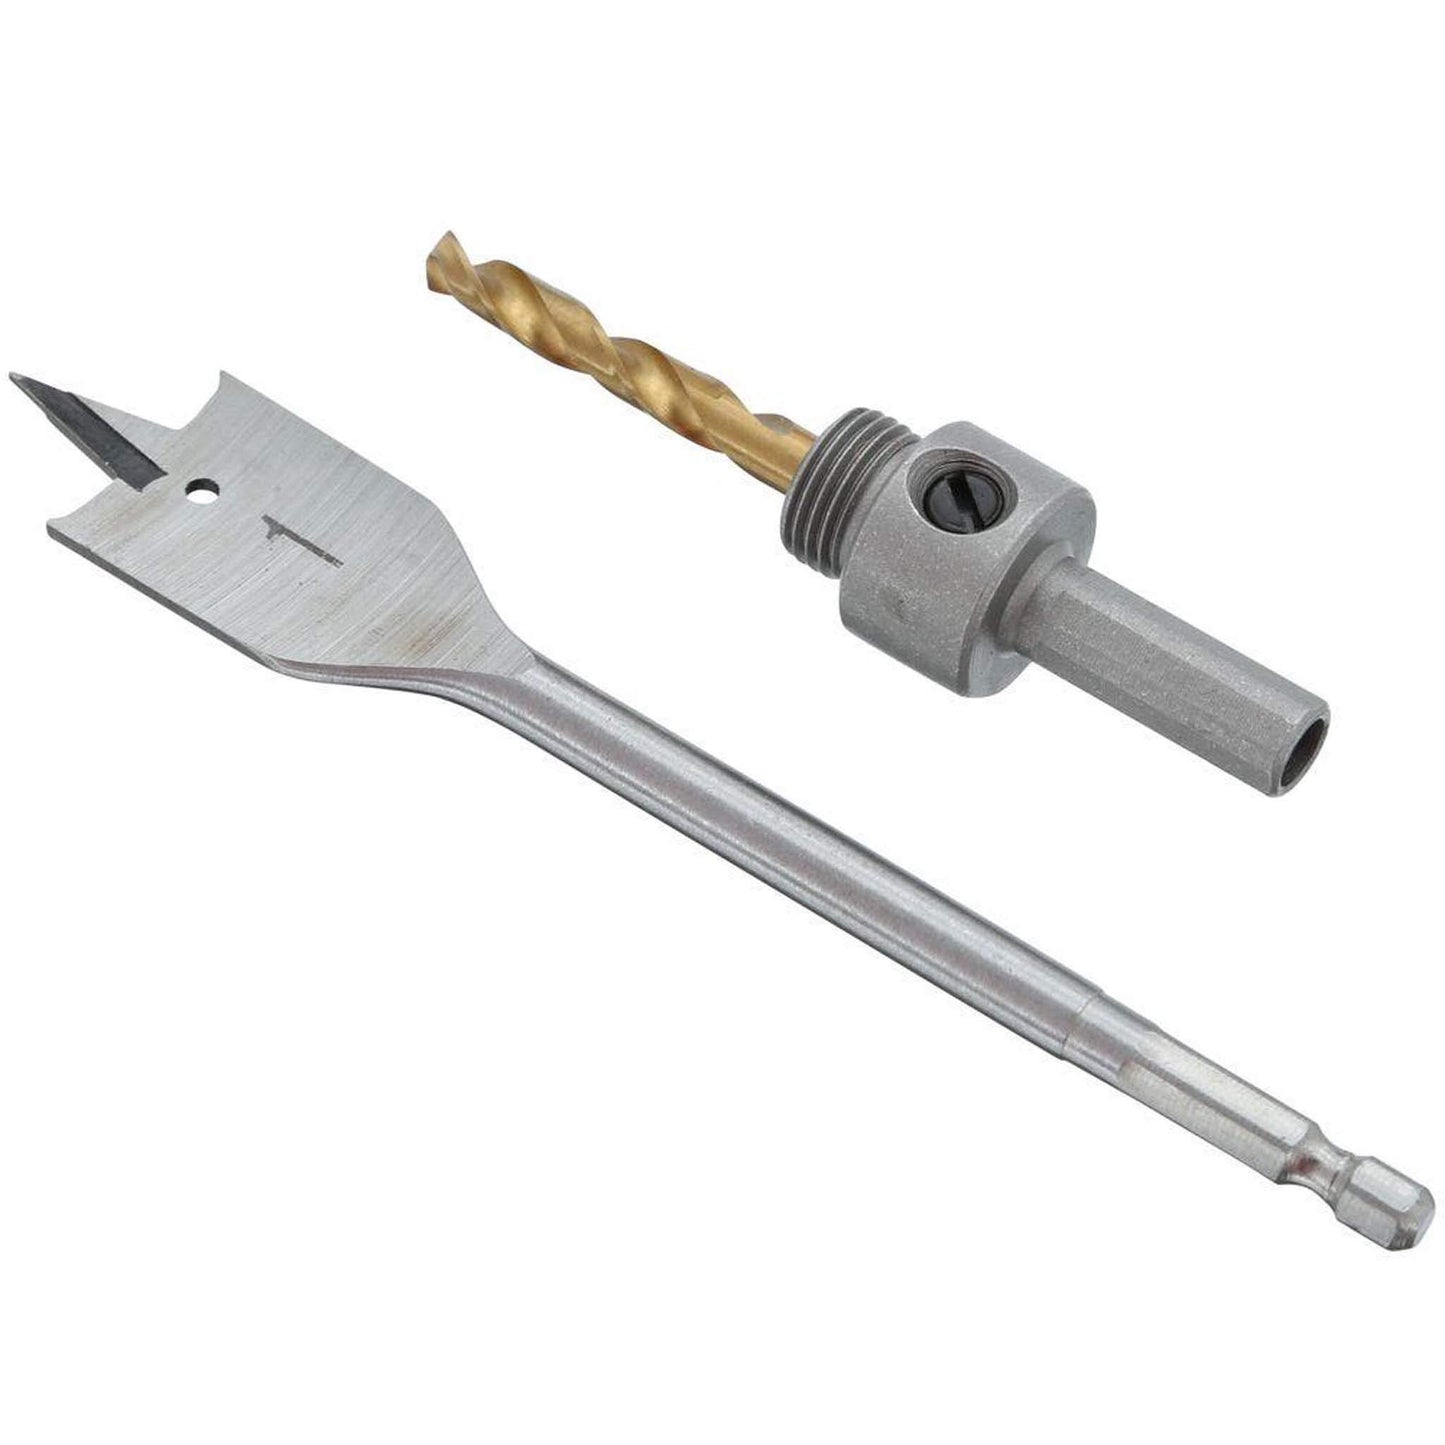 Ryobi A99DLK4 Wood and Metal Door Lock Installation Kit for Installing Deadbolts and Locksets